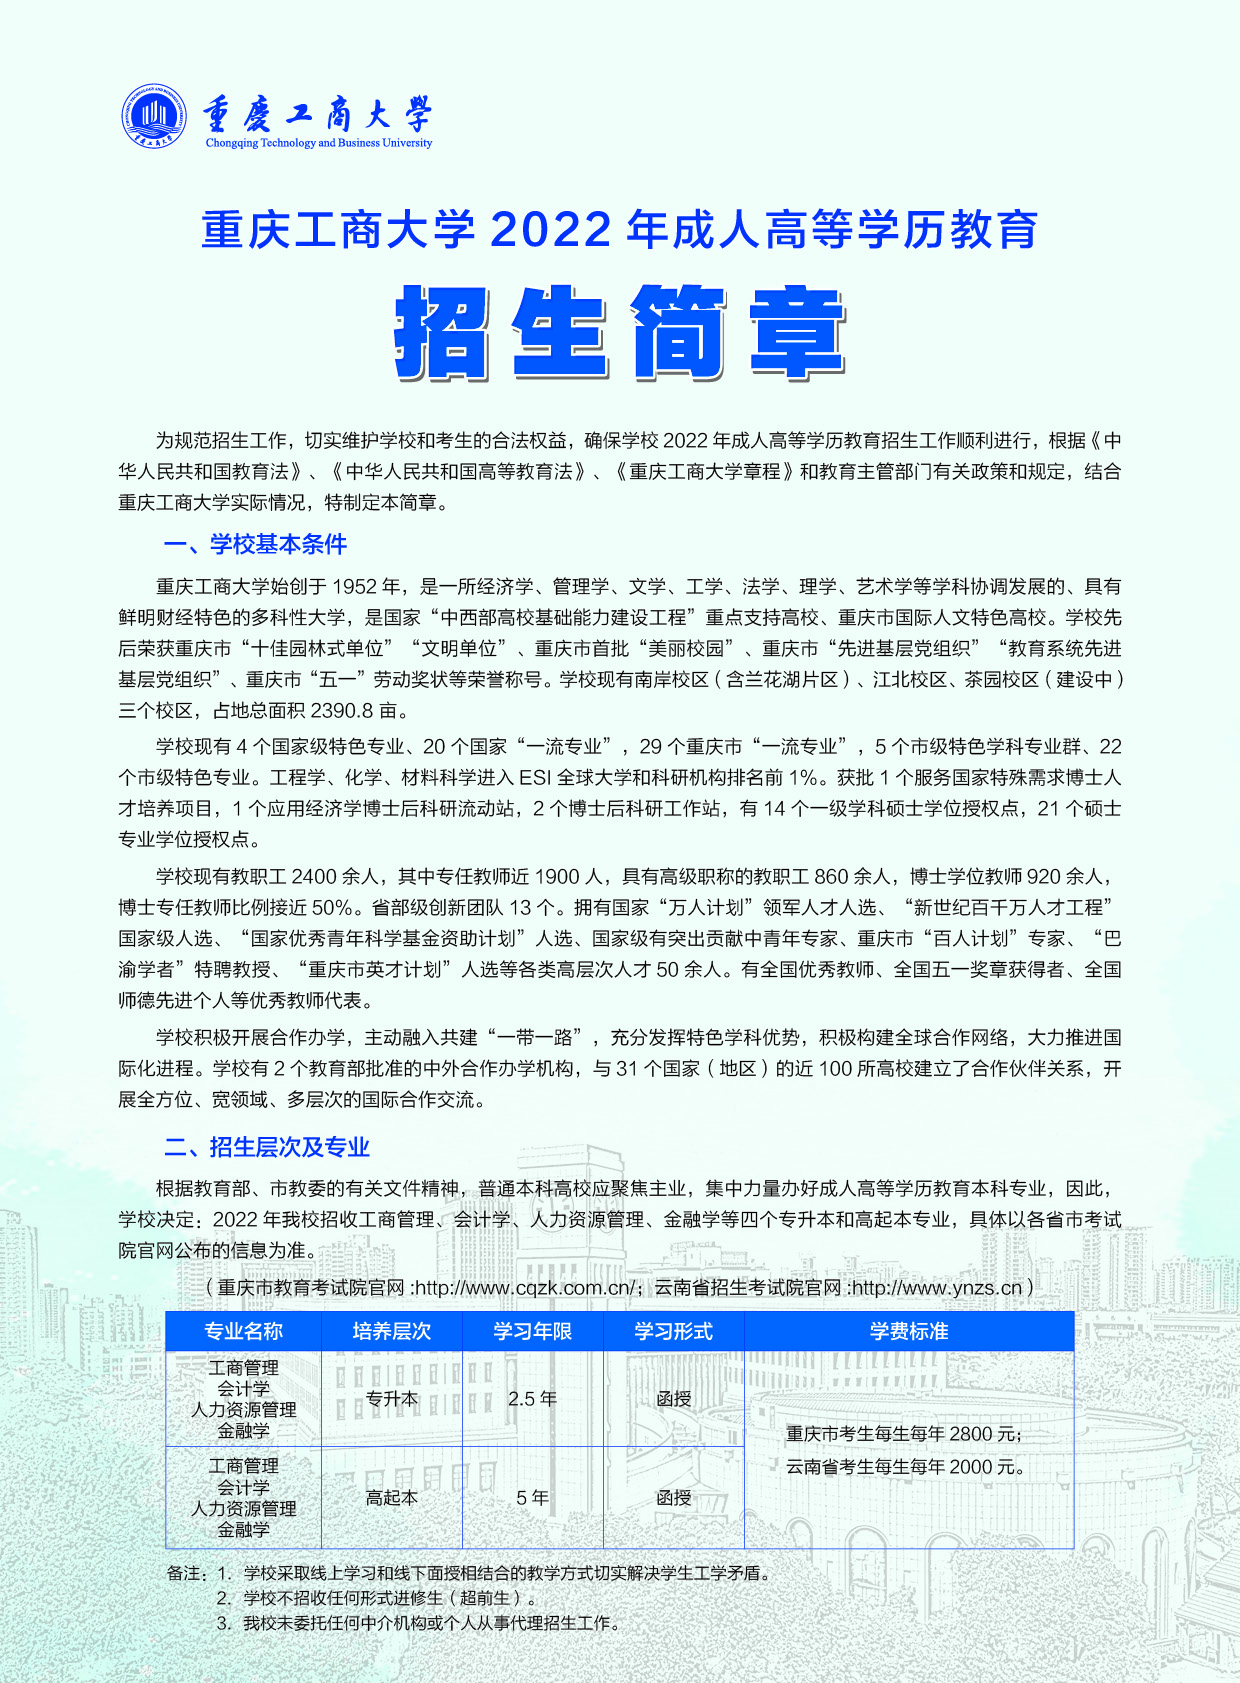 重庆工商大学2022年成人高等学历教育招生简章发布了